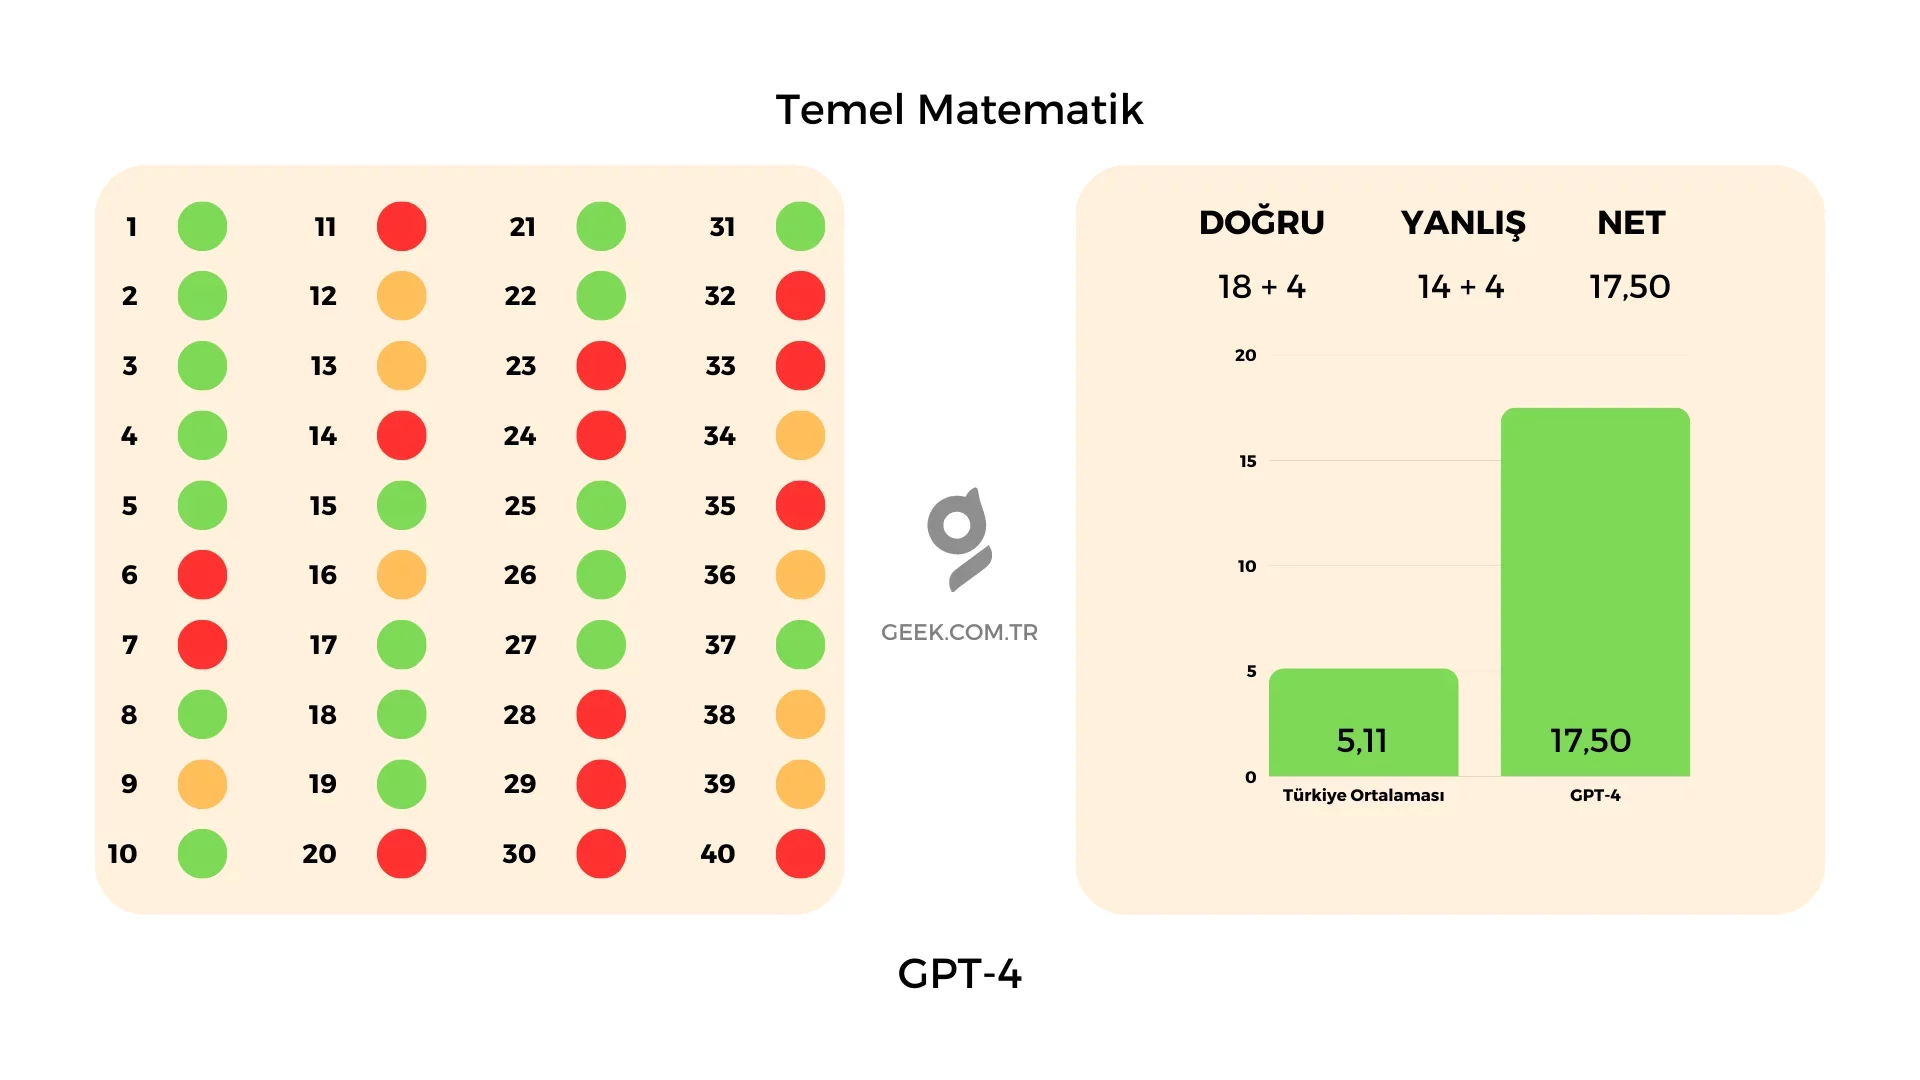 GPT-4 Temel Matematik Sınav Sonuçları